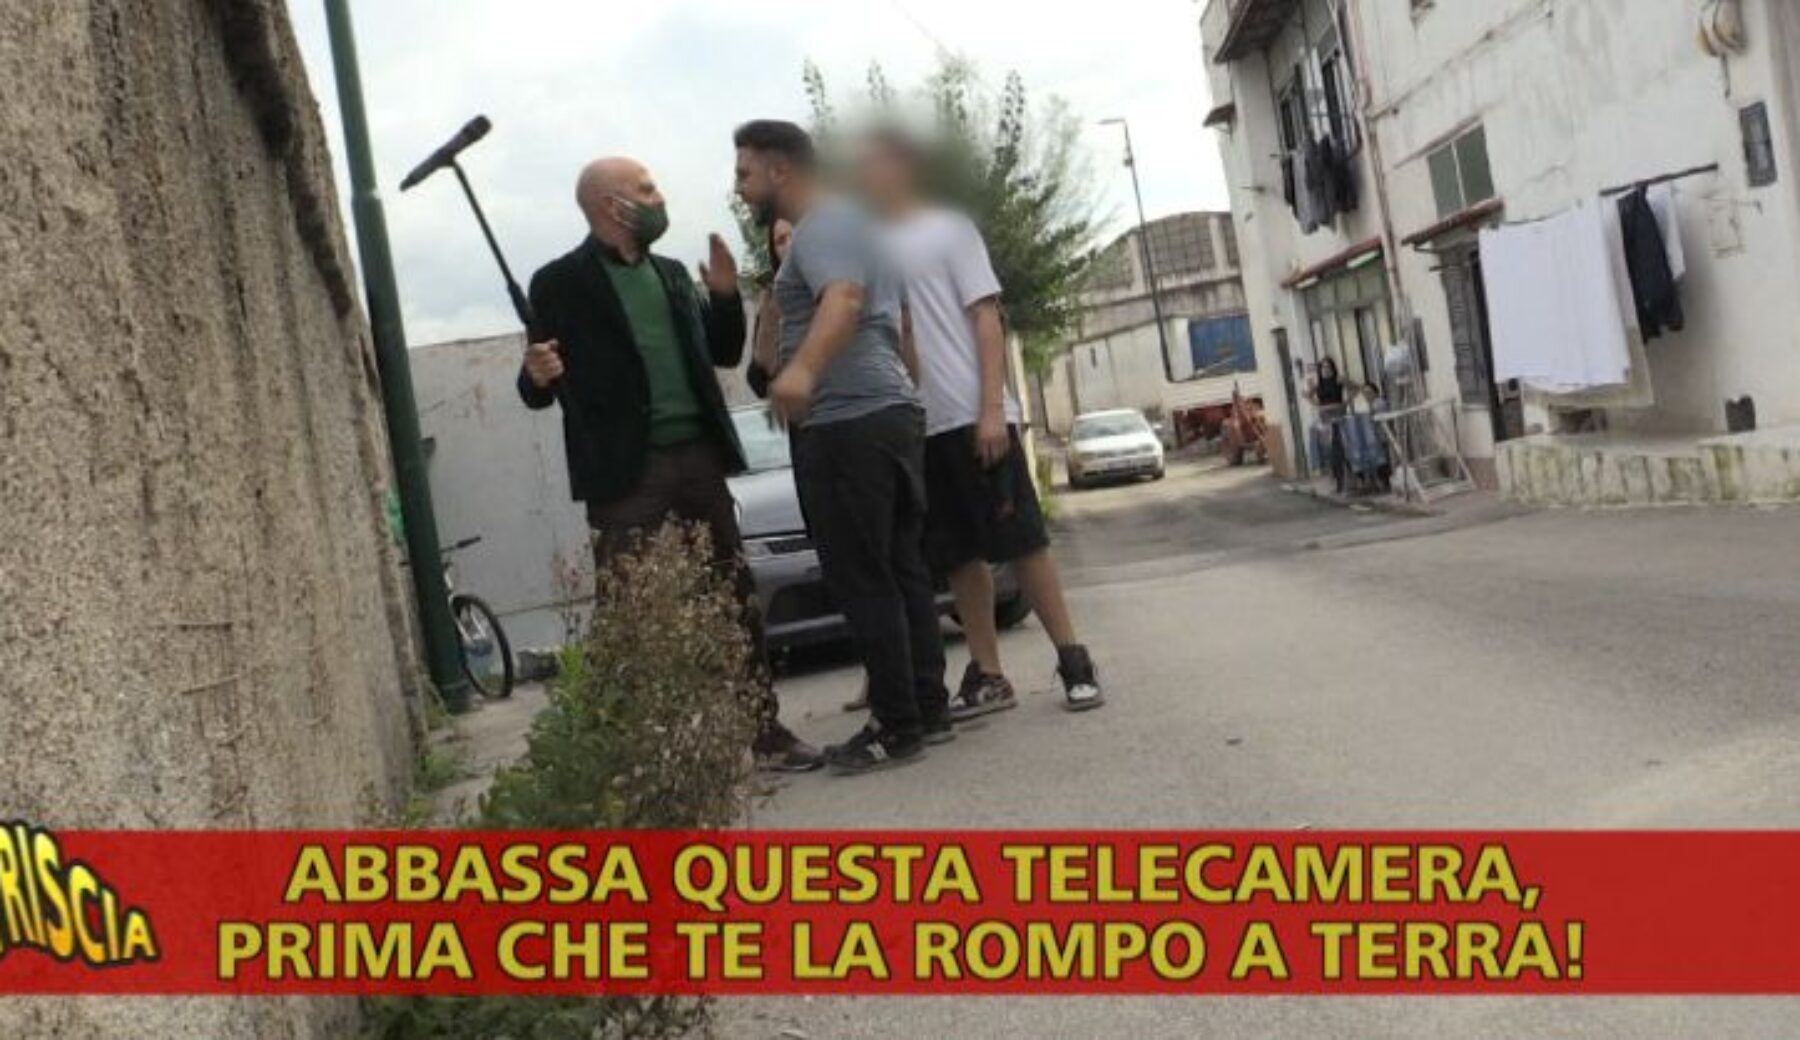 Questa sera a Striscia Luca Abete e il suo cameraman aggrediti a S. Giovanni a Teduccio (Napoli)